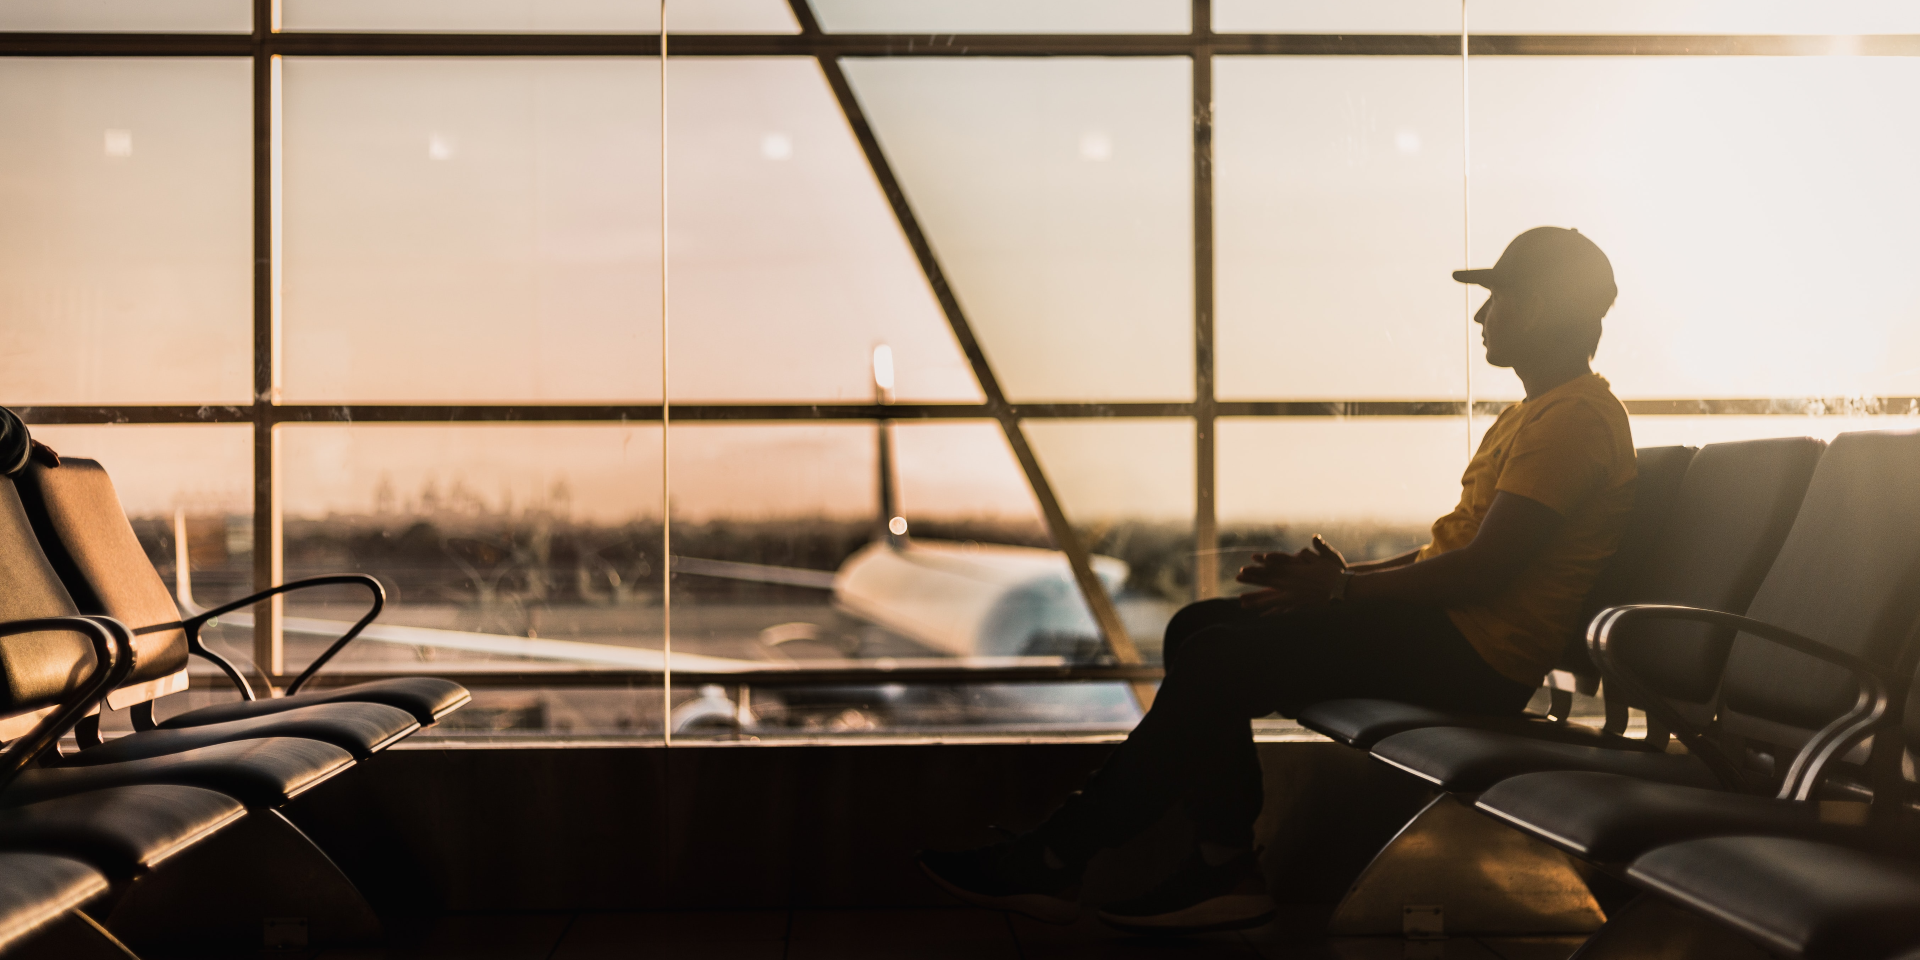 Un uomo aspetta il suo volo all’aeroporto.